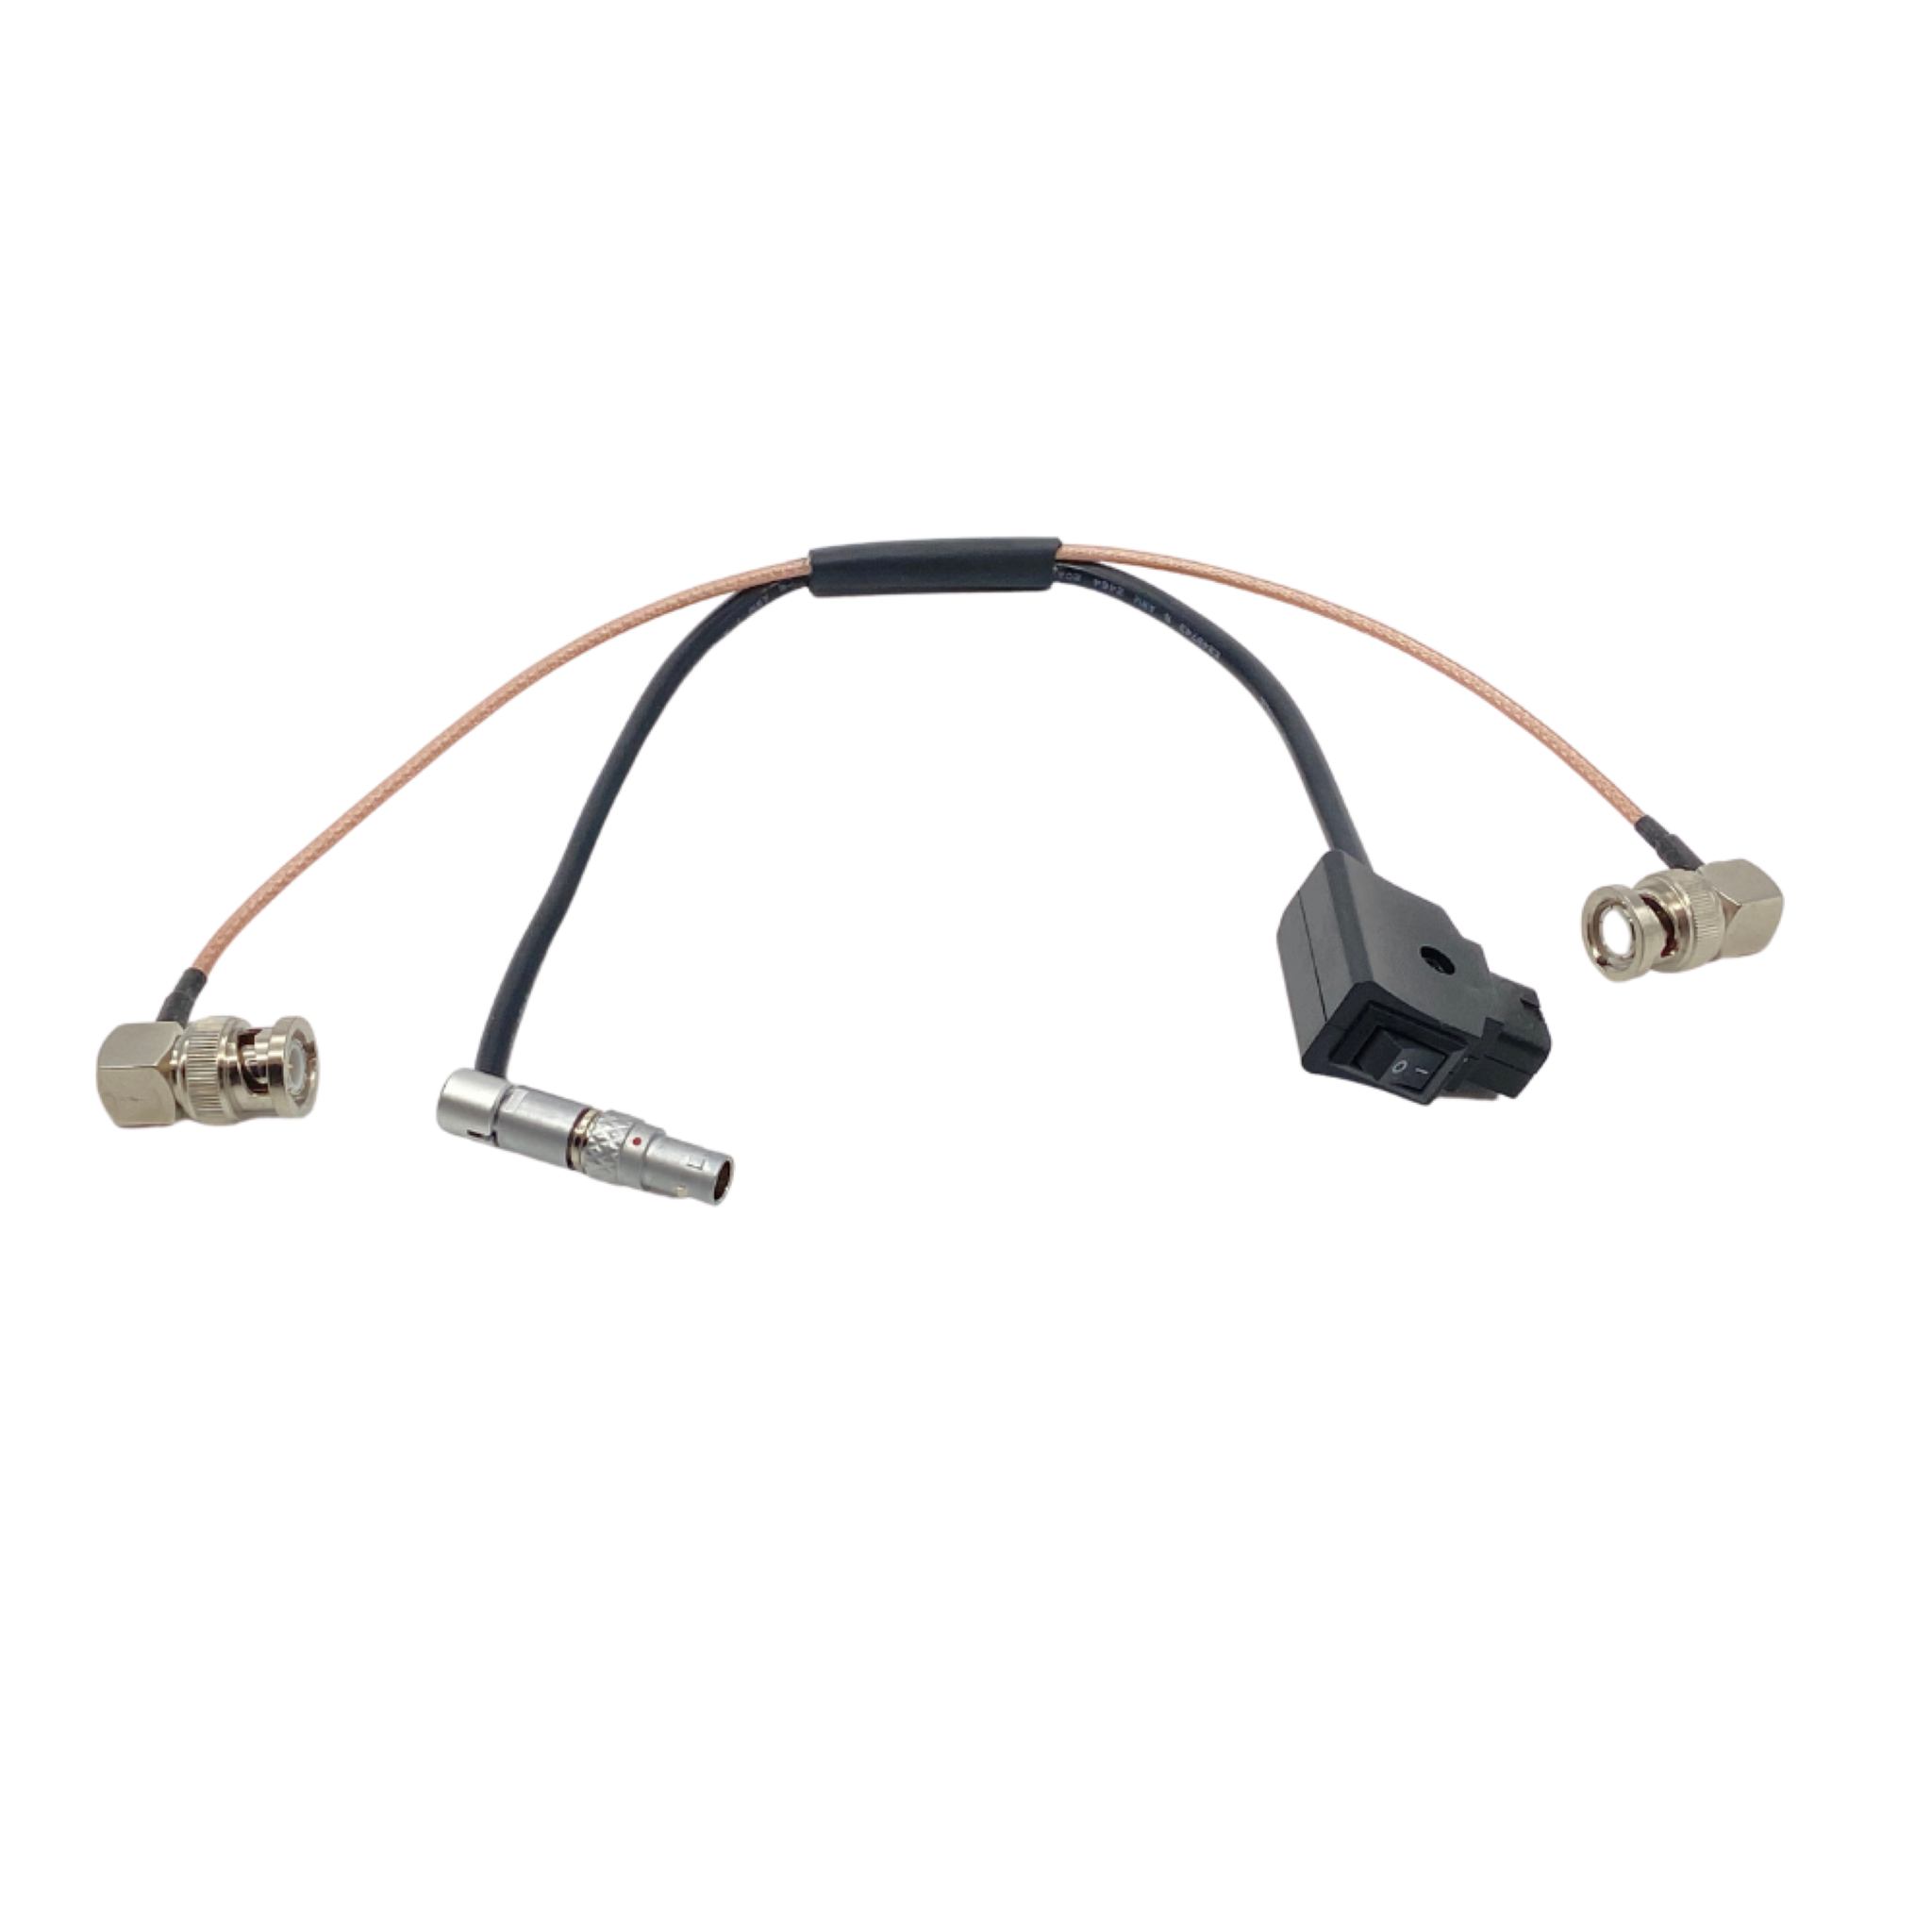 Cable de alimentación y vídeo SDI compatible con Lemo de 4 pines con interruptor de alimentación, 12